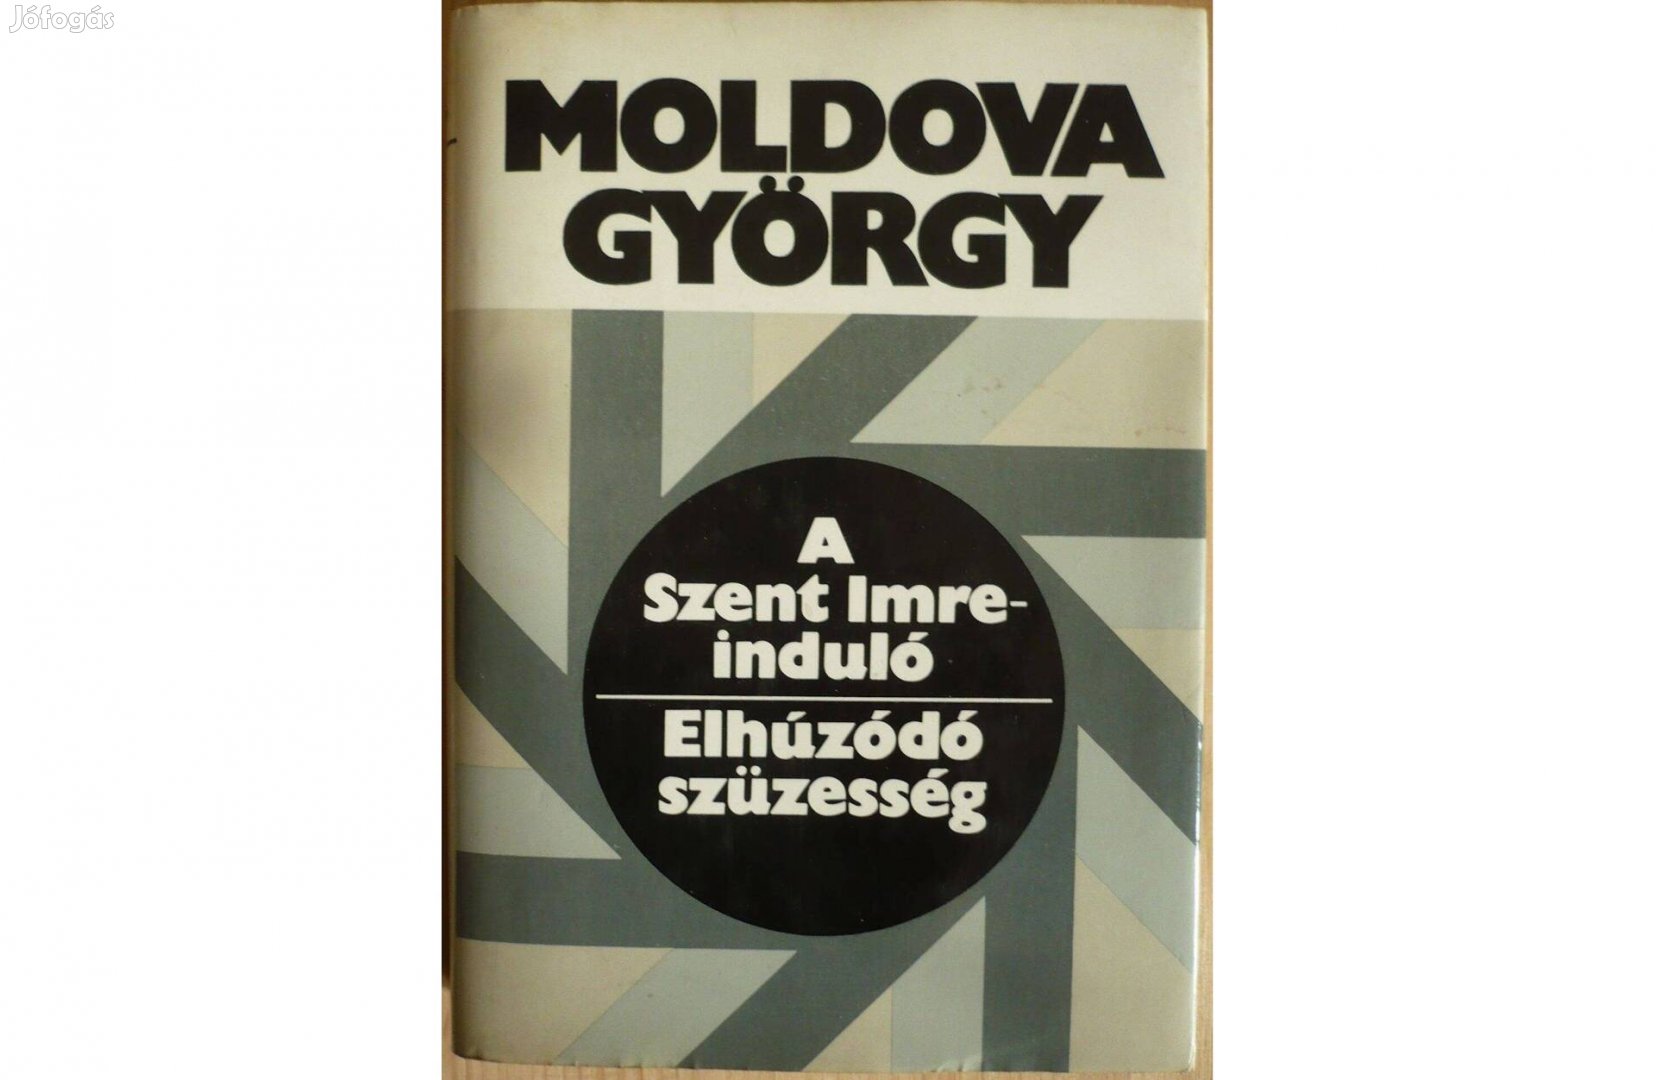 Moldova György: A Szent Imre-induló / Elhúzódó szüzesség